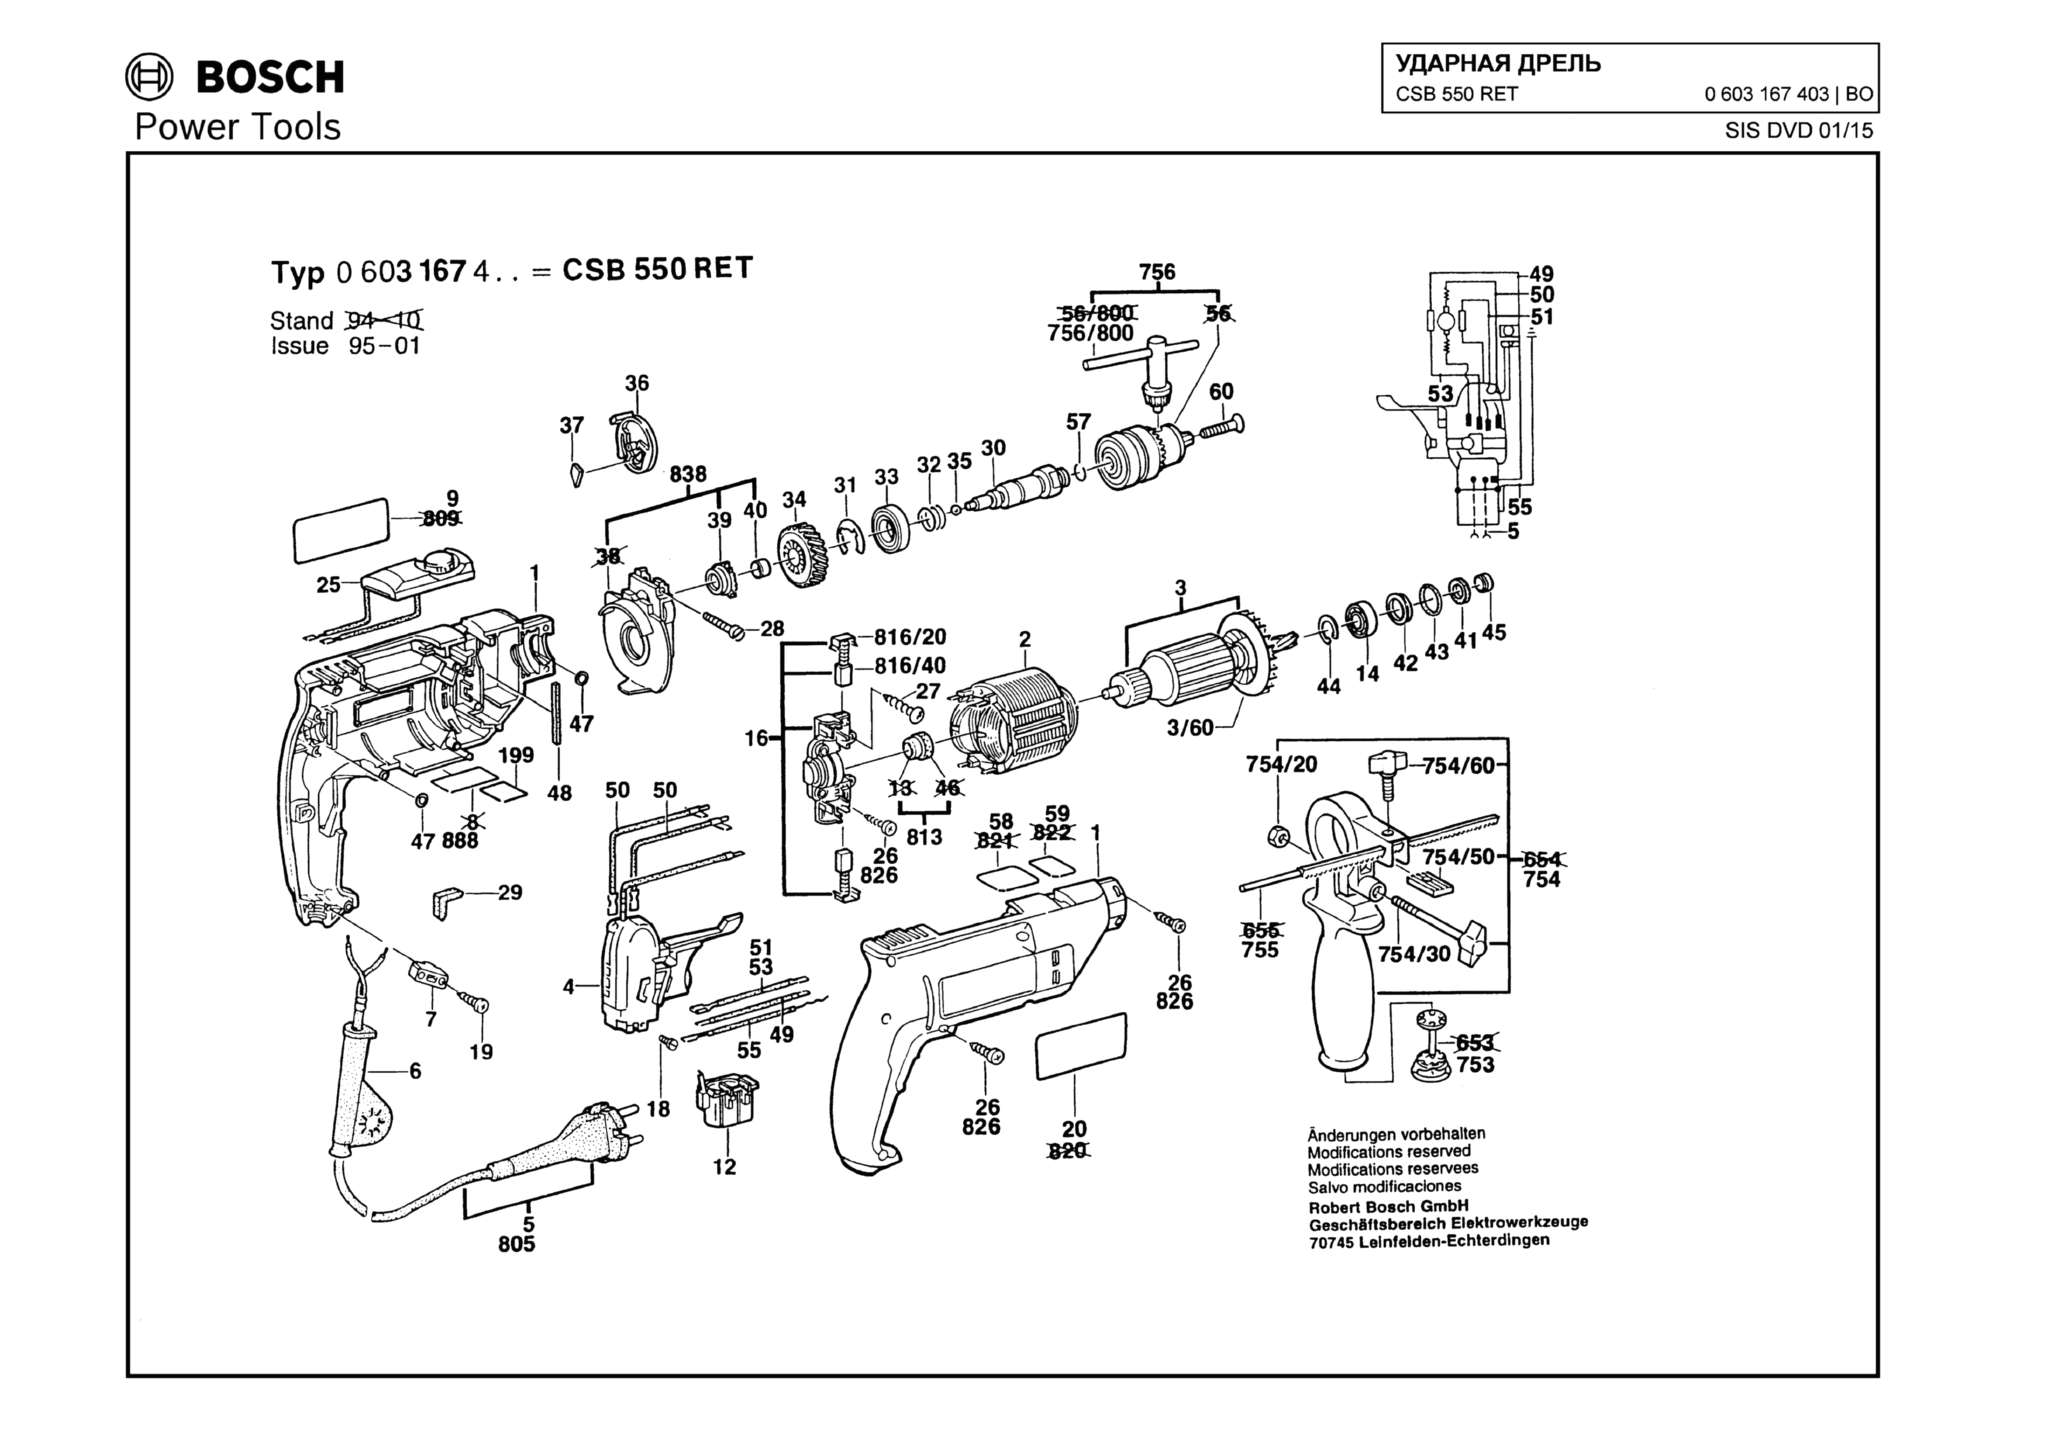 Запчасти, схема и деталировка Bosch CSB 550 RET (ТИП 0603167403)